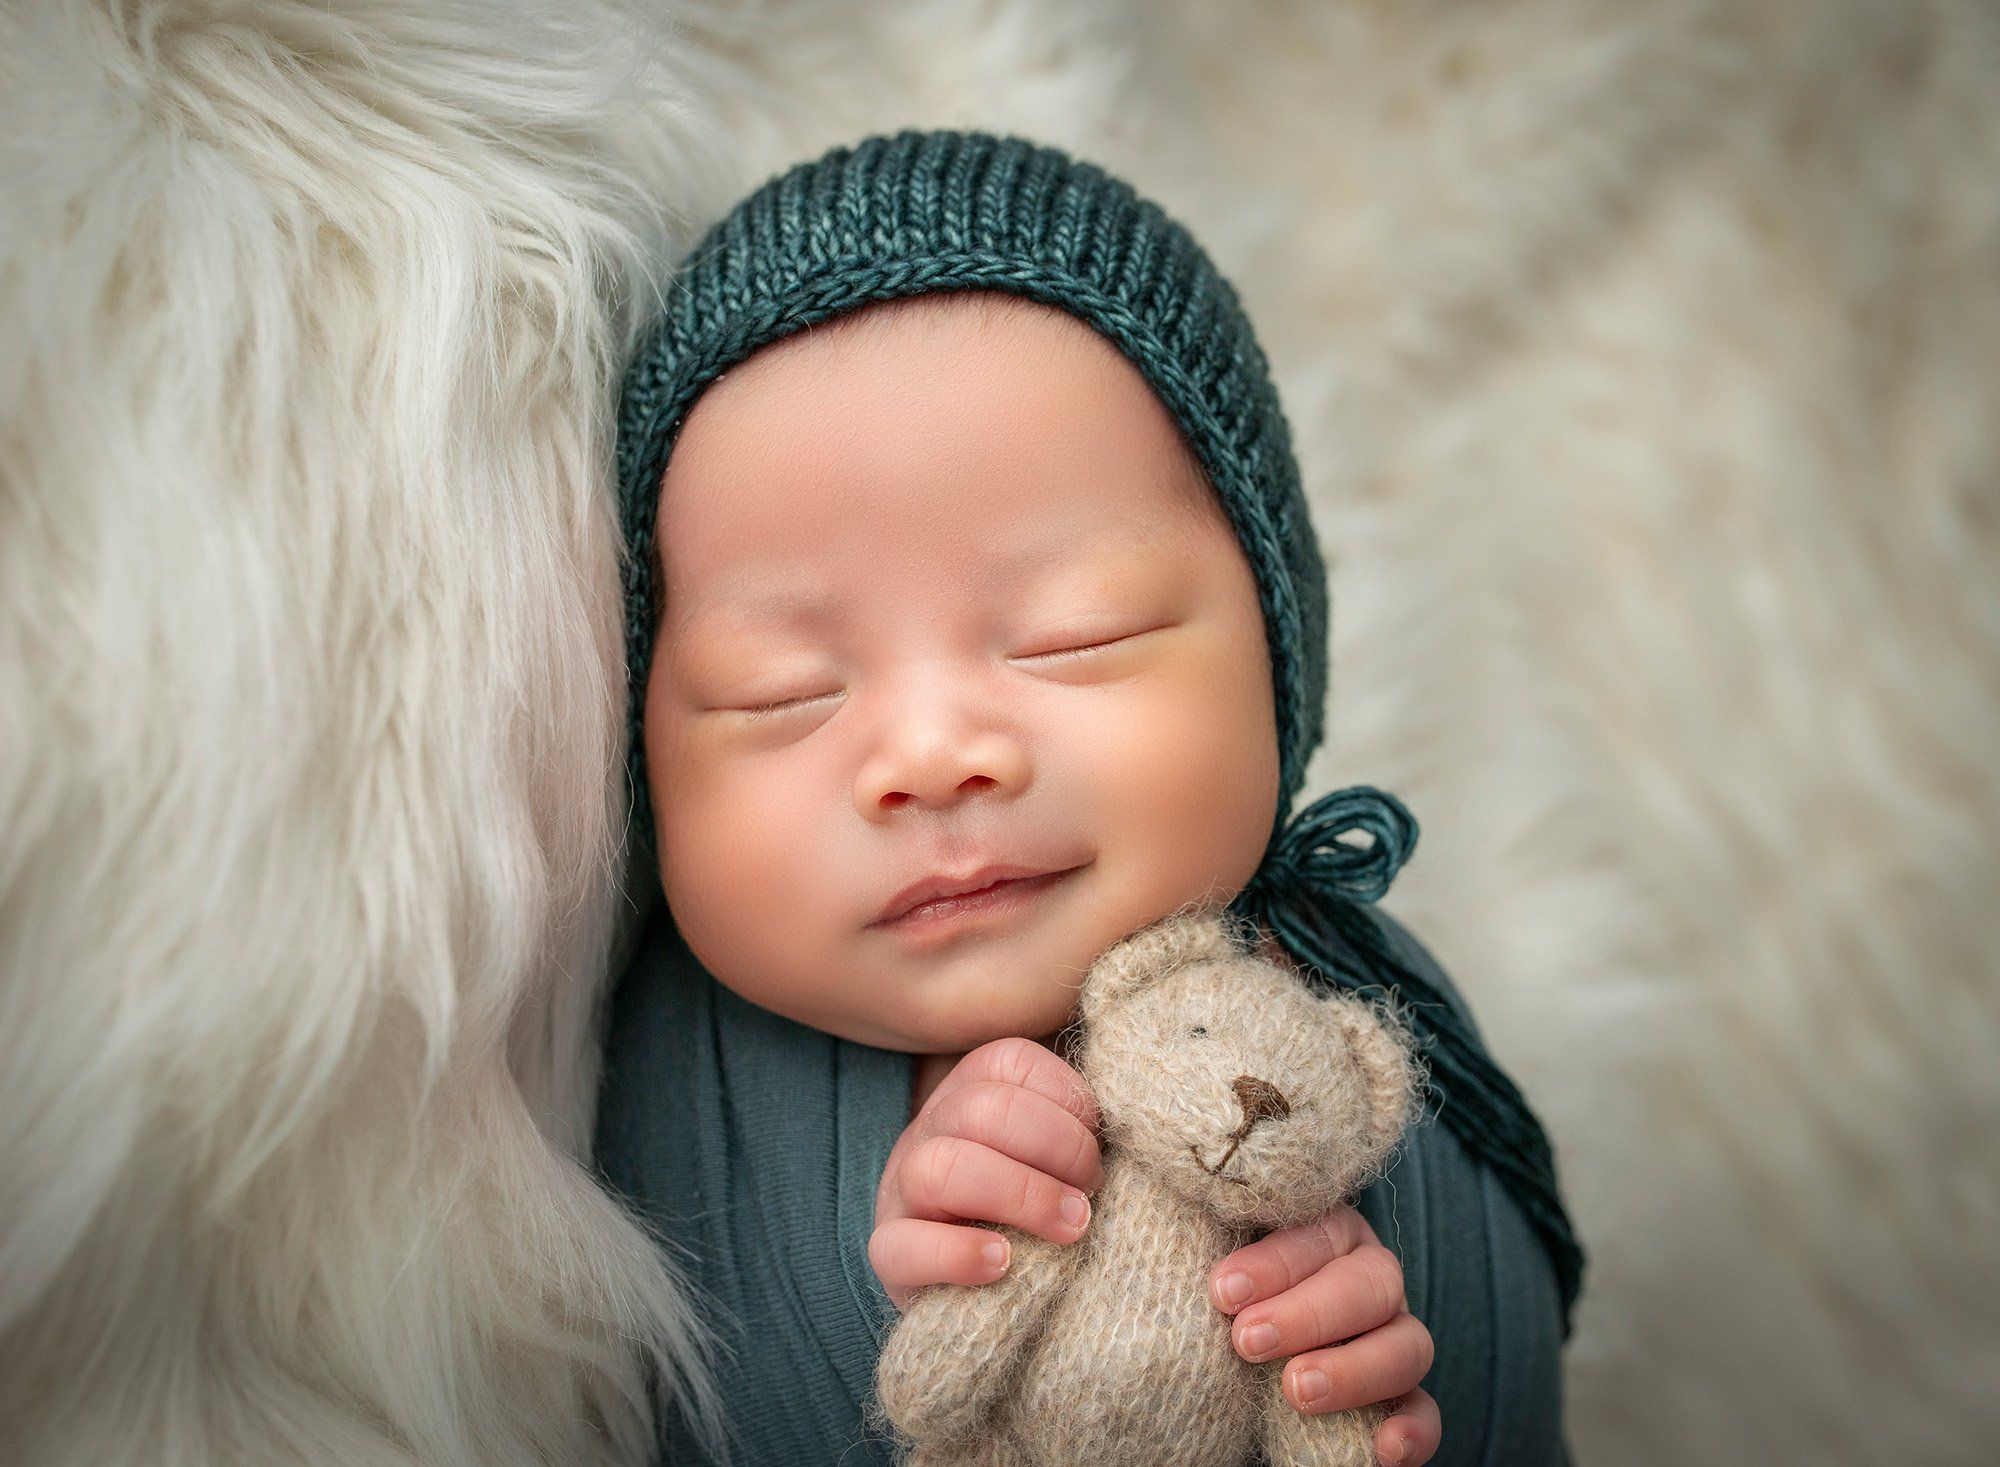 newborn baby boy asleep swaddled in green holding teddy bear on a fluffy blanket